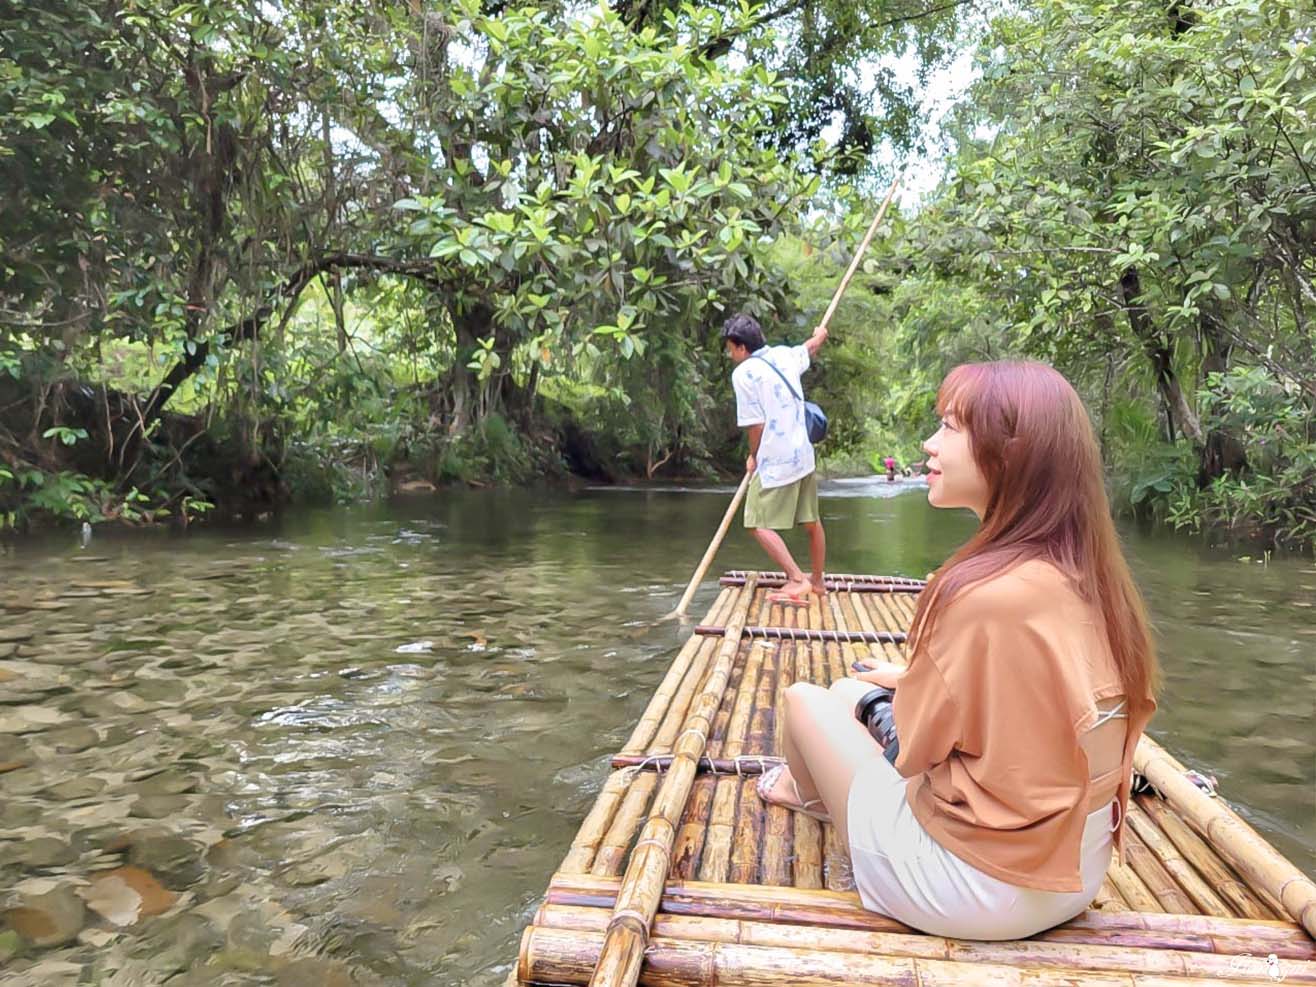 攀牙秘境 竹筏漂流Komol‘s Corner Bamboo Rafting 在地人最愛消暑活動 @蔣妮の冰斗人生